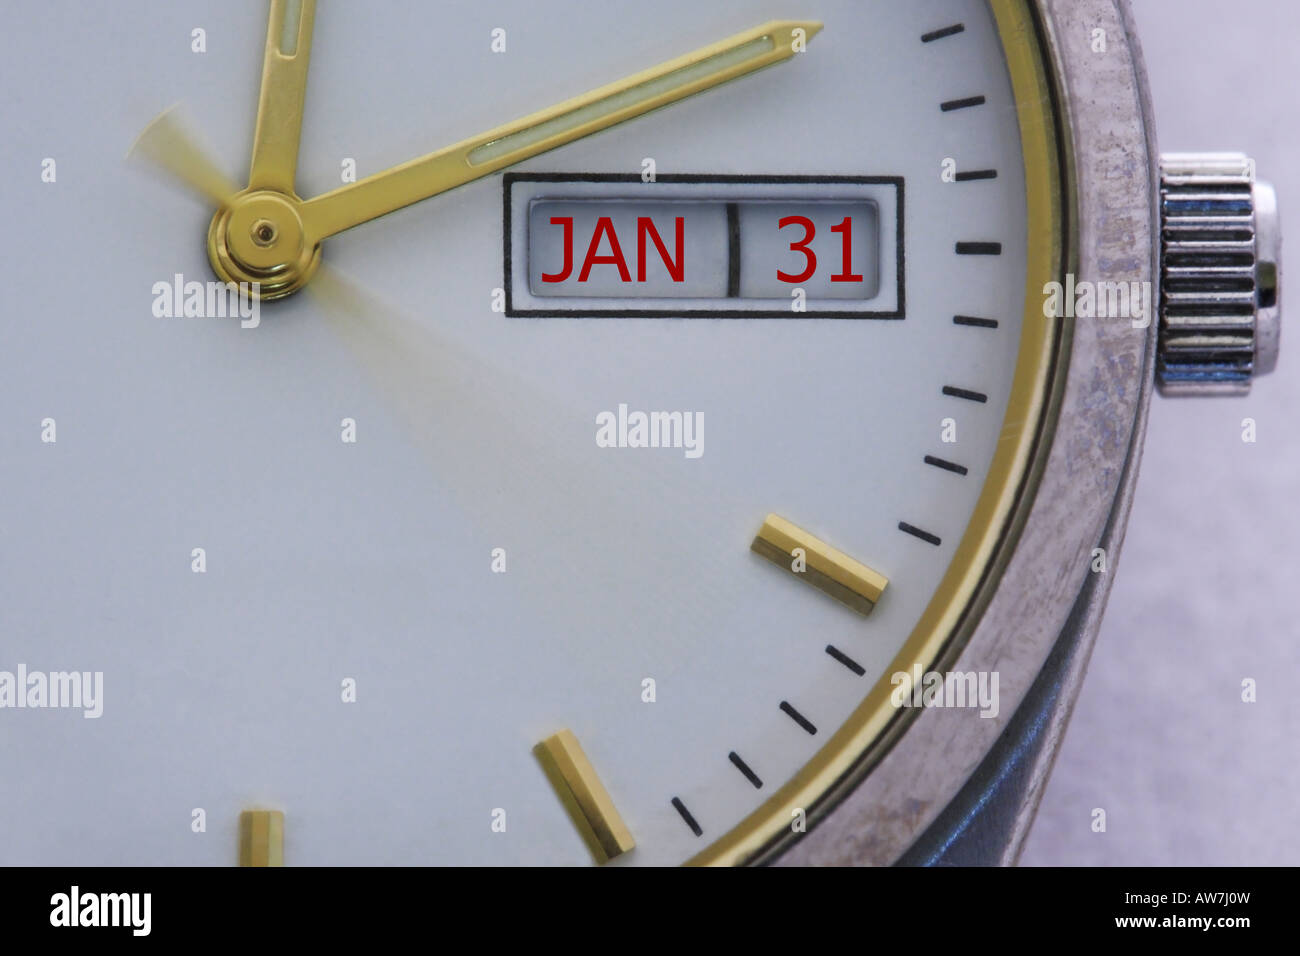 Watch showing UK Jan 31 Tax deadline Stock Photo